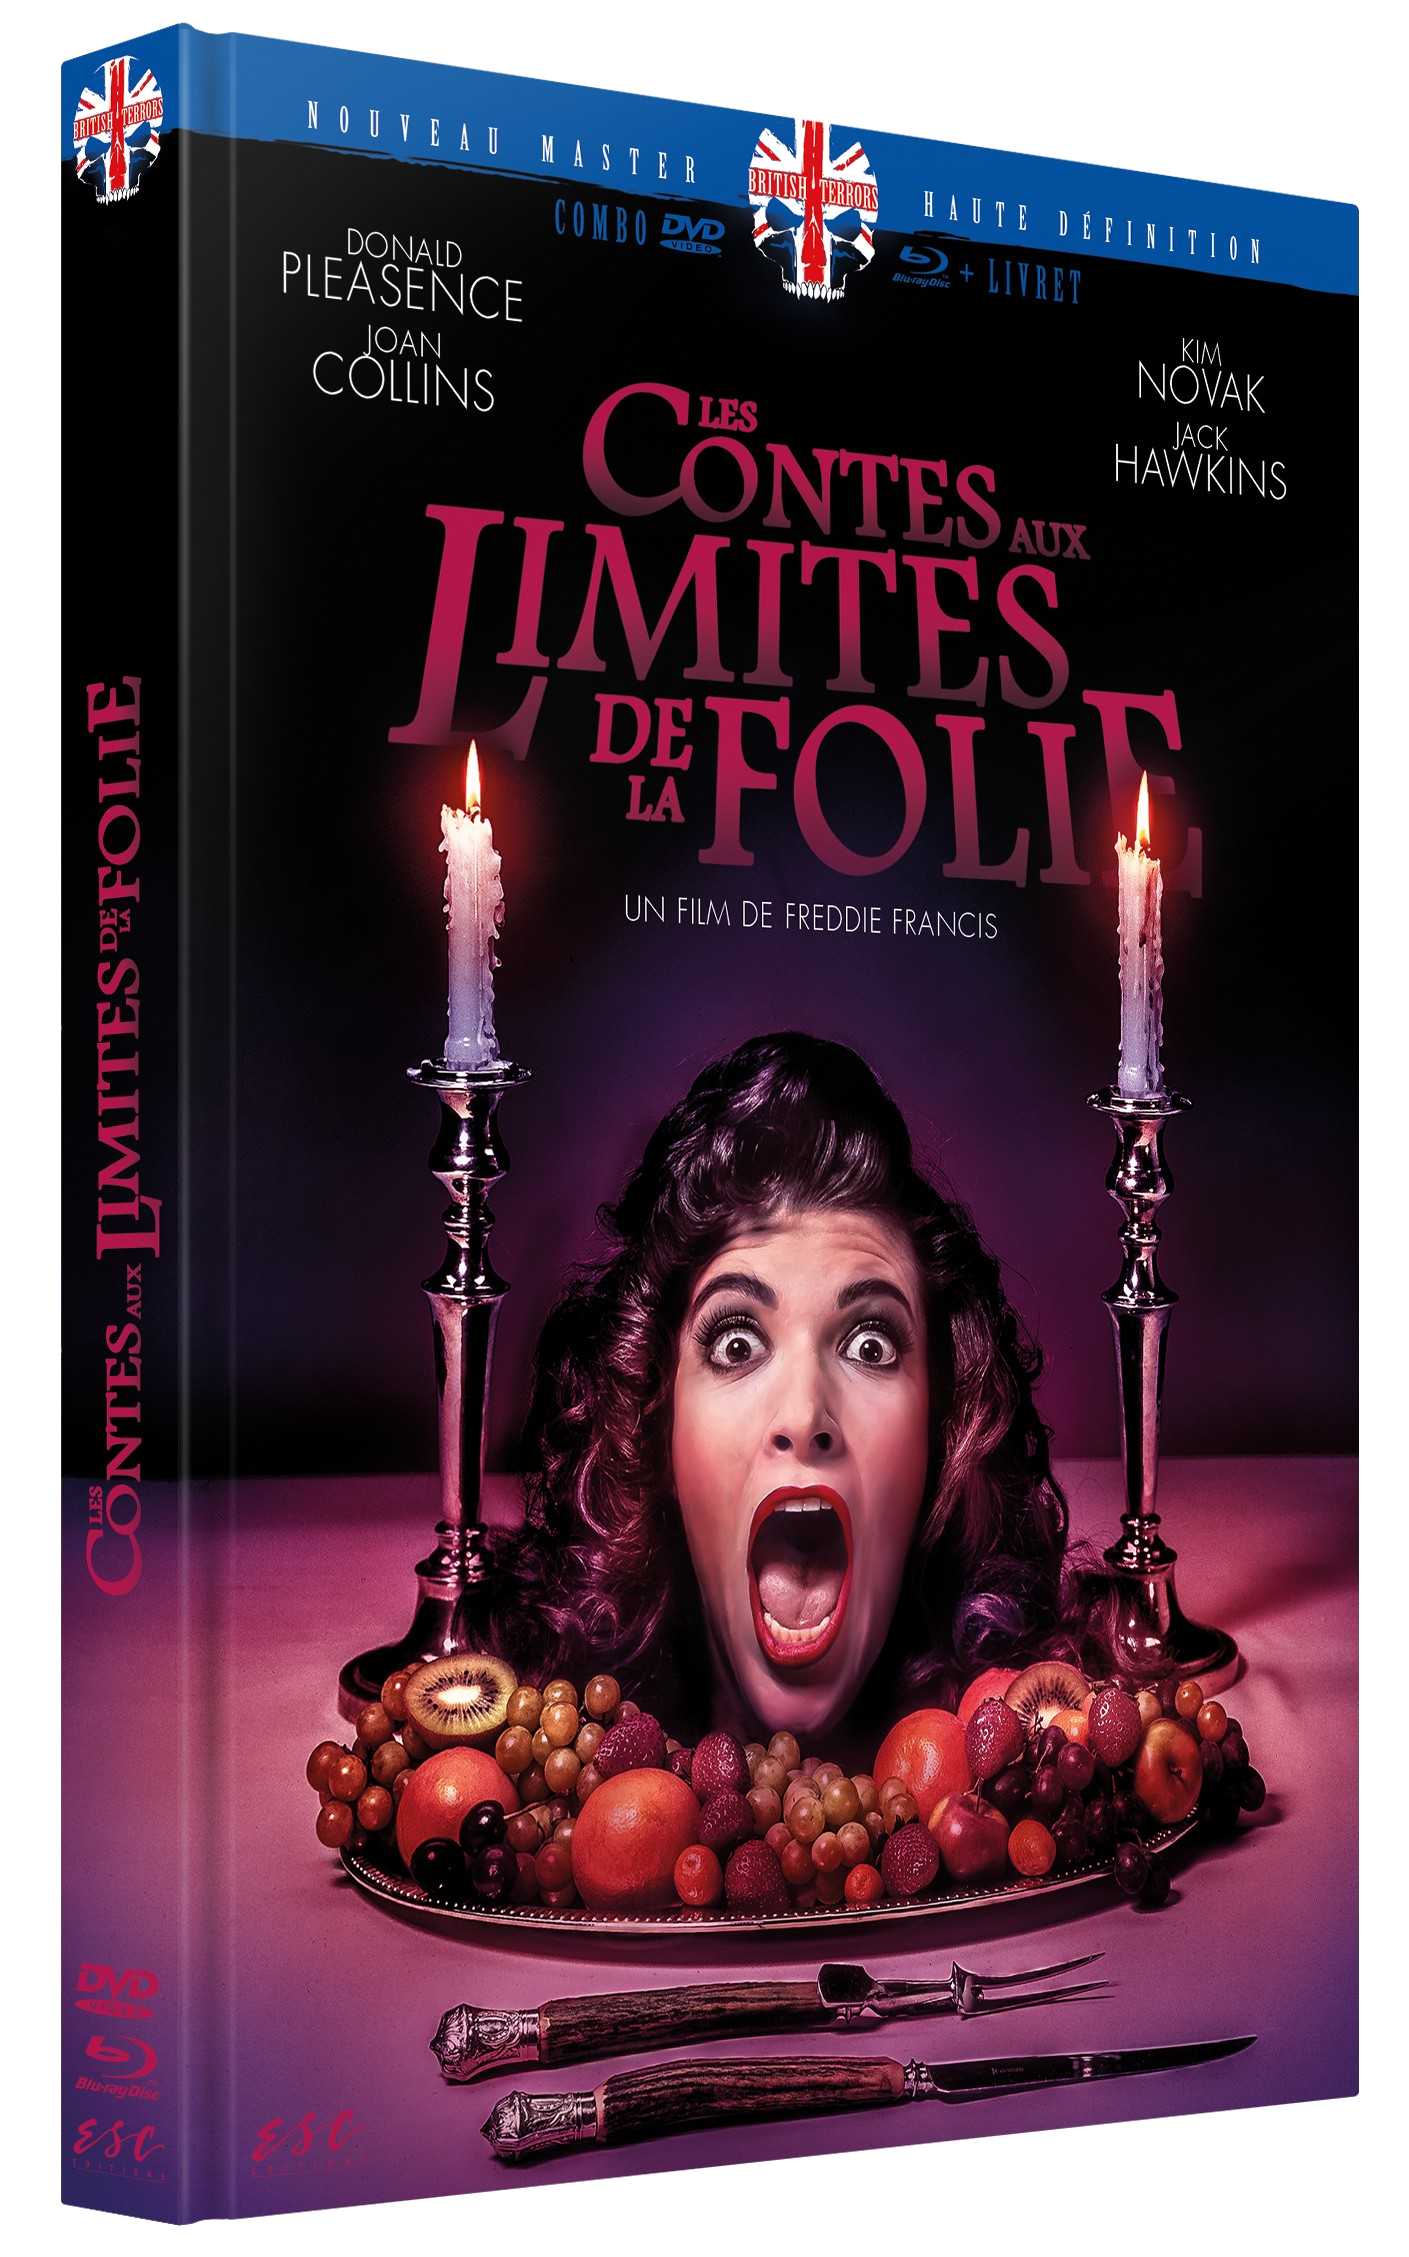 Les Contes aux limites de la folie [Édition Collector Blu-Ray + DVD + Livret]